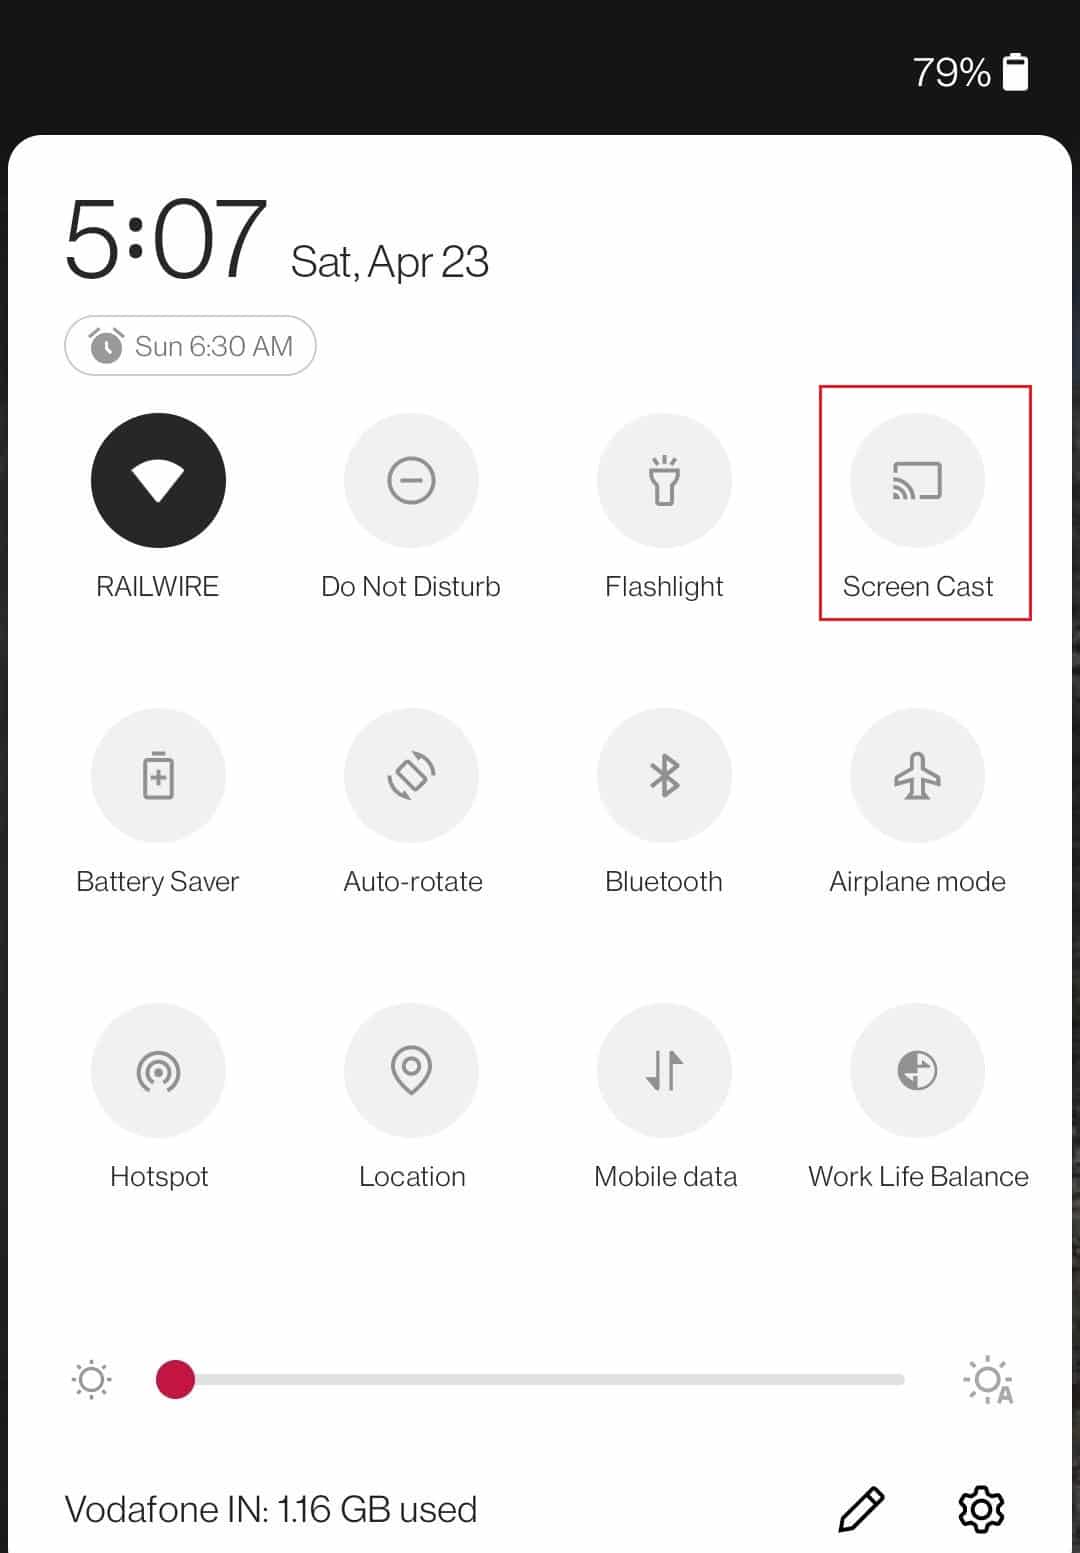 toque no ícone do screencast no menu de notificação do dispositivo Android